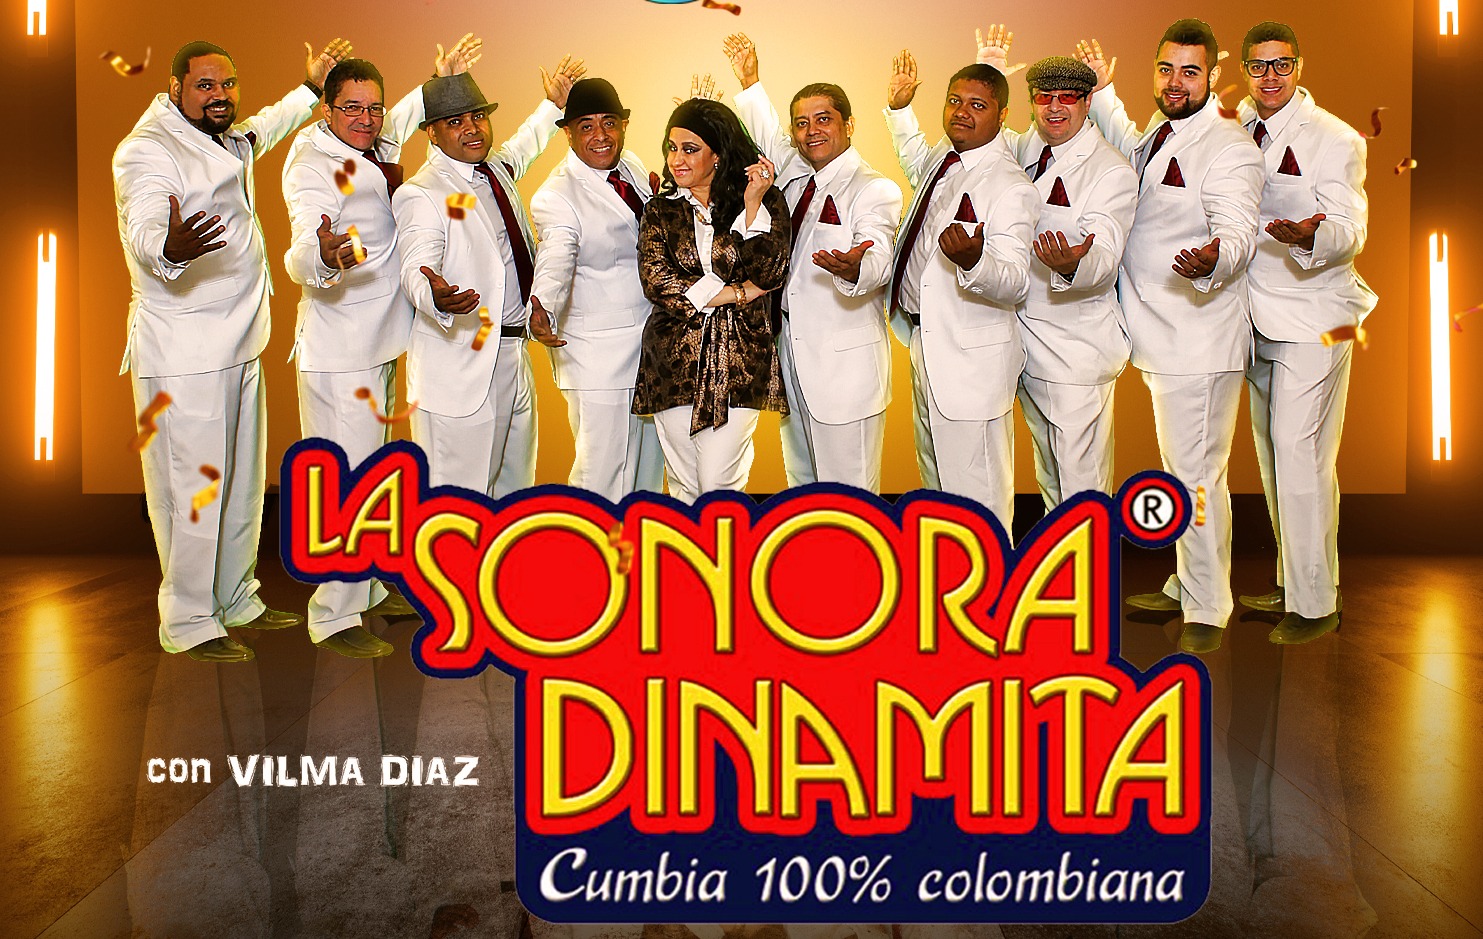 LA SONORA DINAMITA en Los Angeles! Tickets EVENT / CONCERT